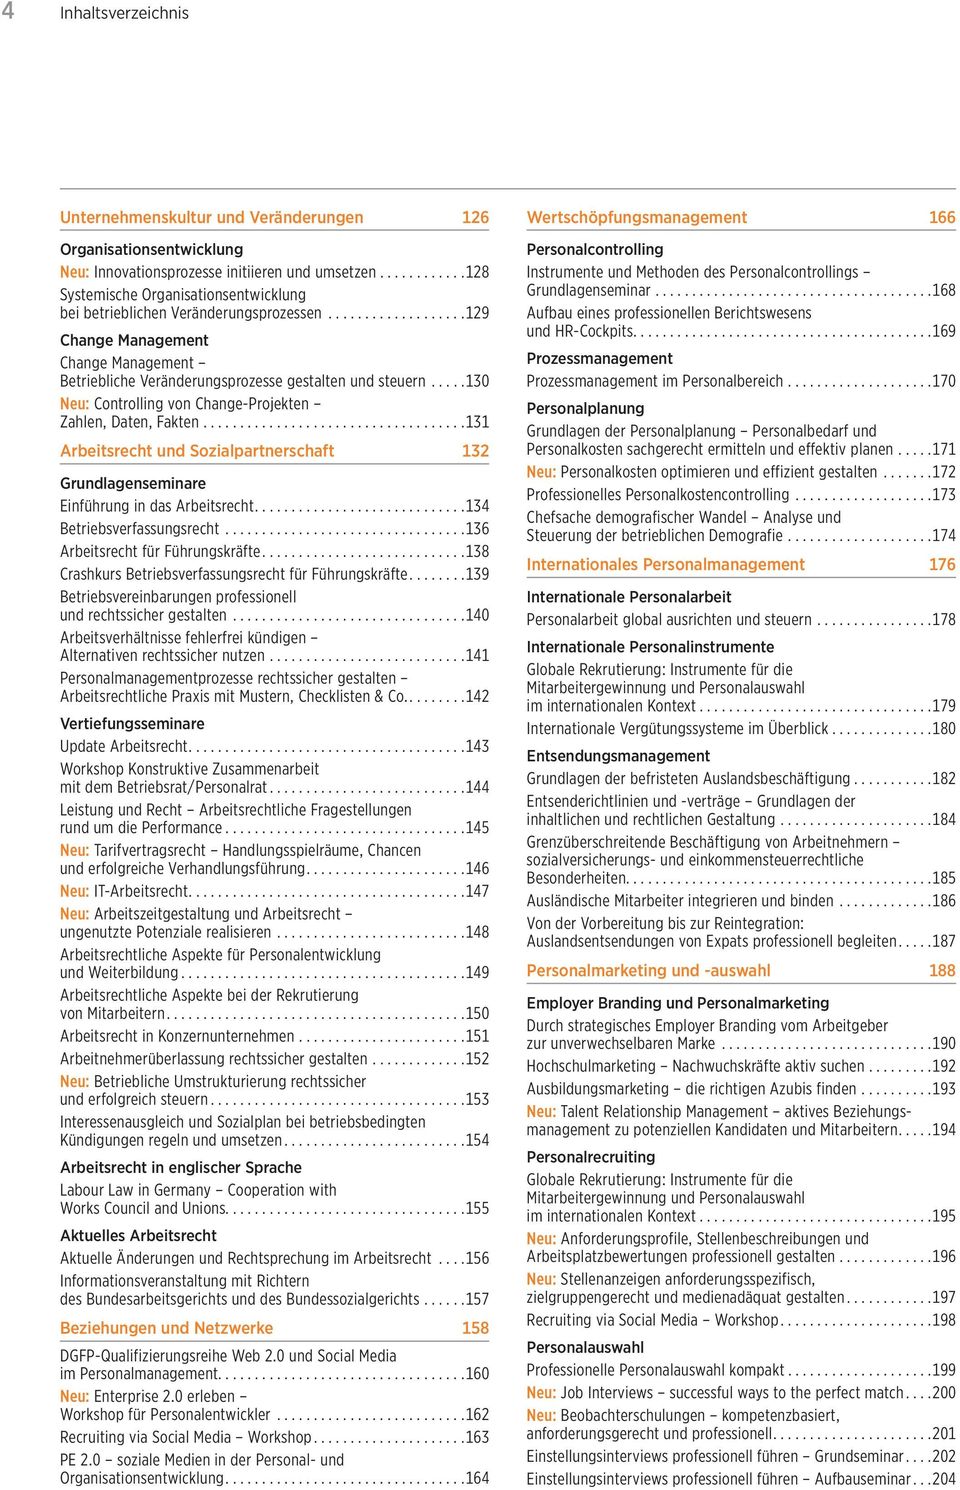 .. 130 Neu: Controlling von Change-Projekten Zahlen, Daten, Fakten... 131 Arbeitsrecht und Sozialpartnerschaft 132 Grundlagenseminare Einführung in das Arbeitsrecht.... 134 Betriebsverfassungsrecht.